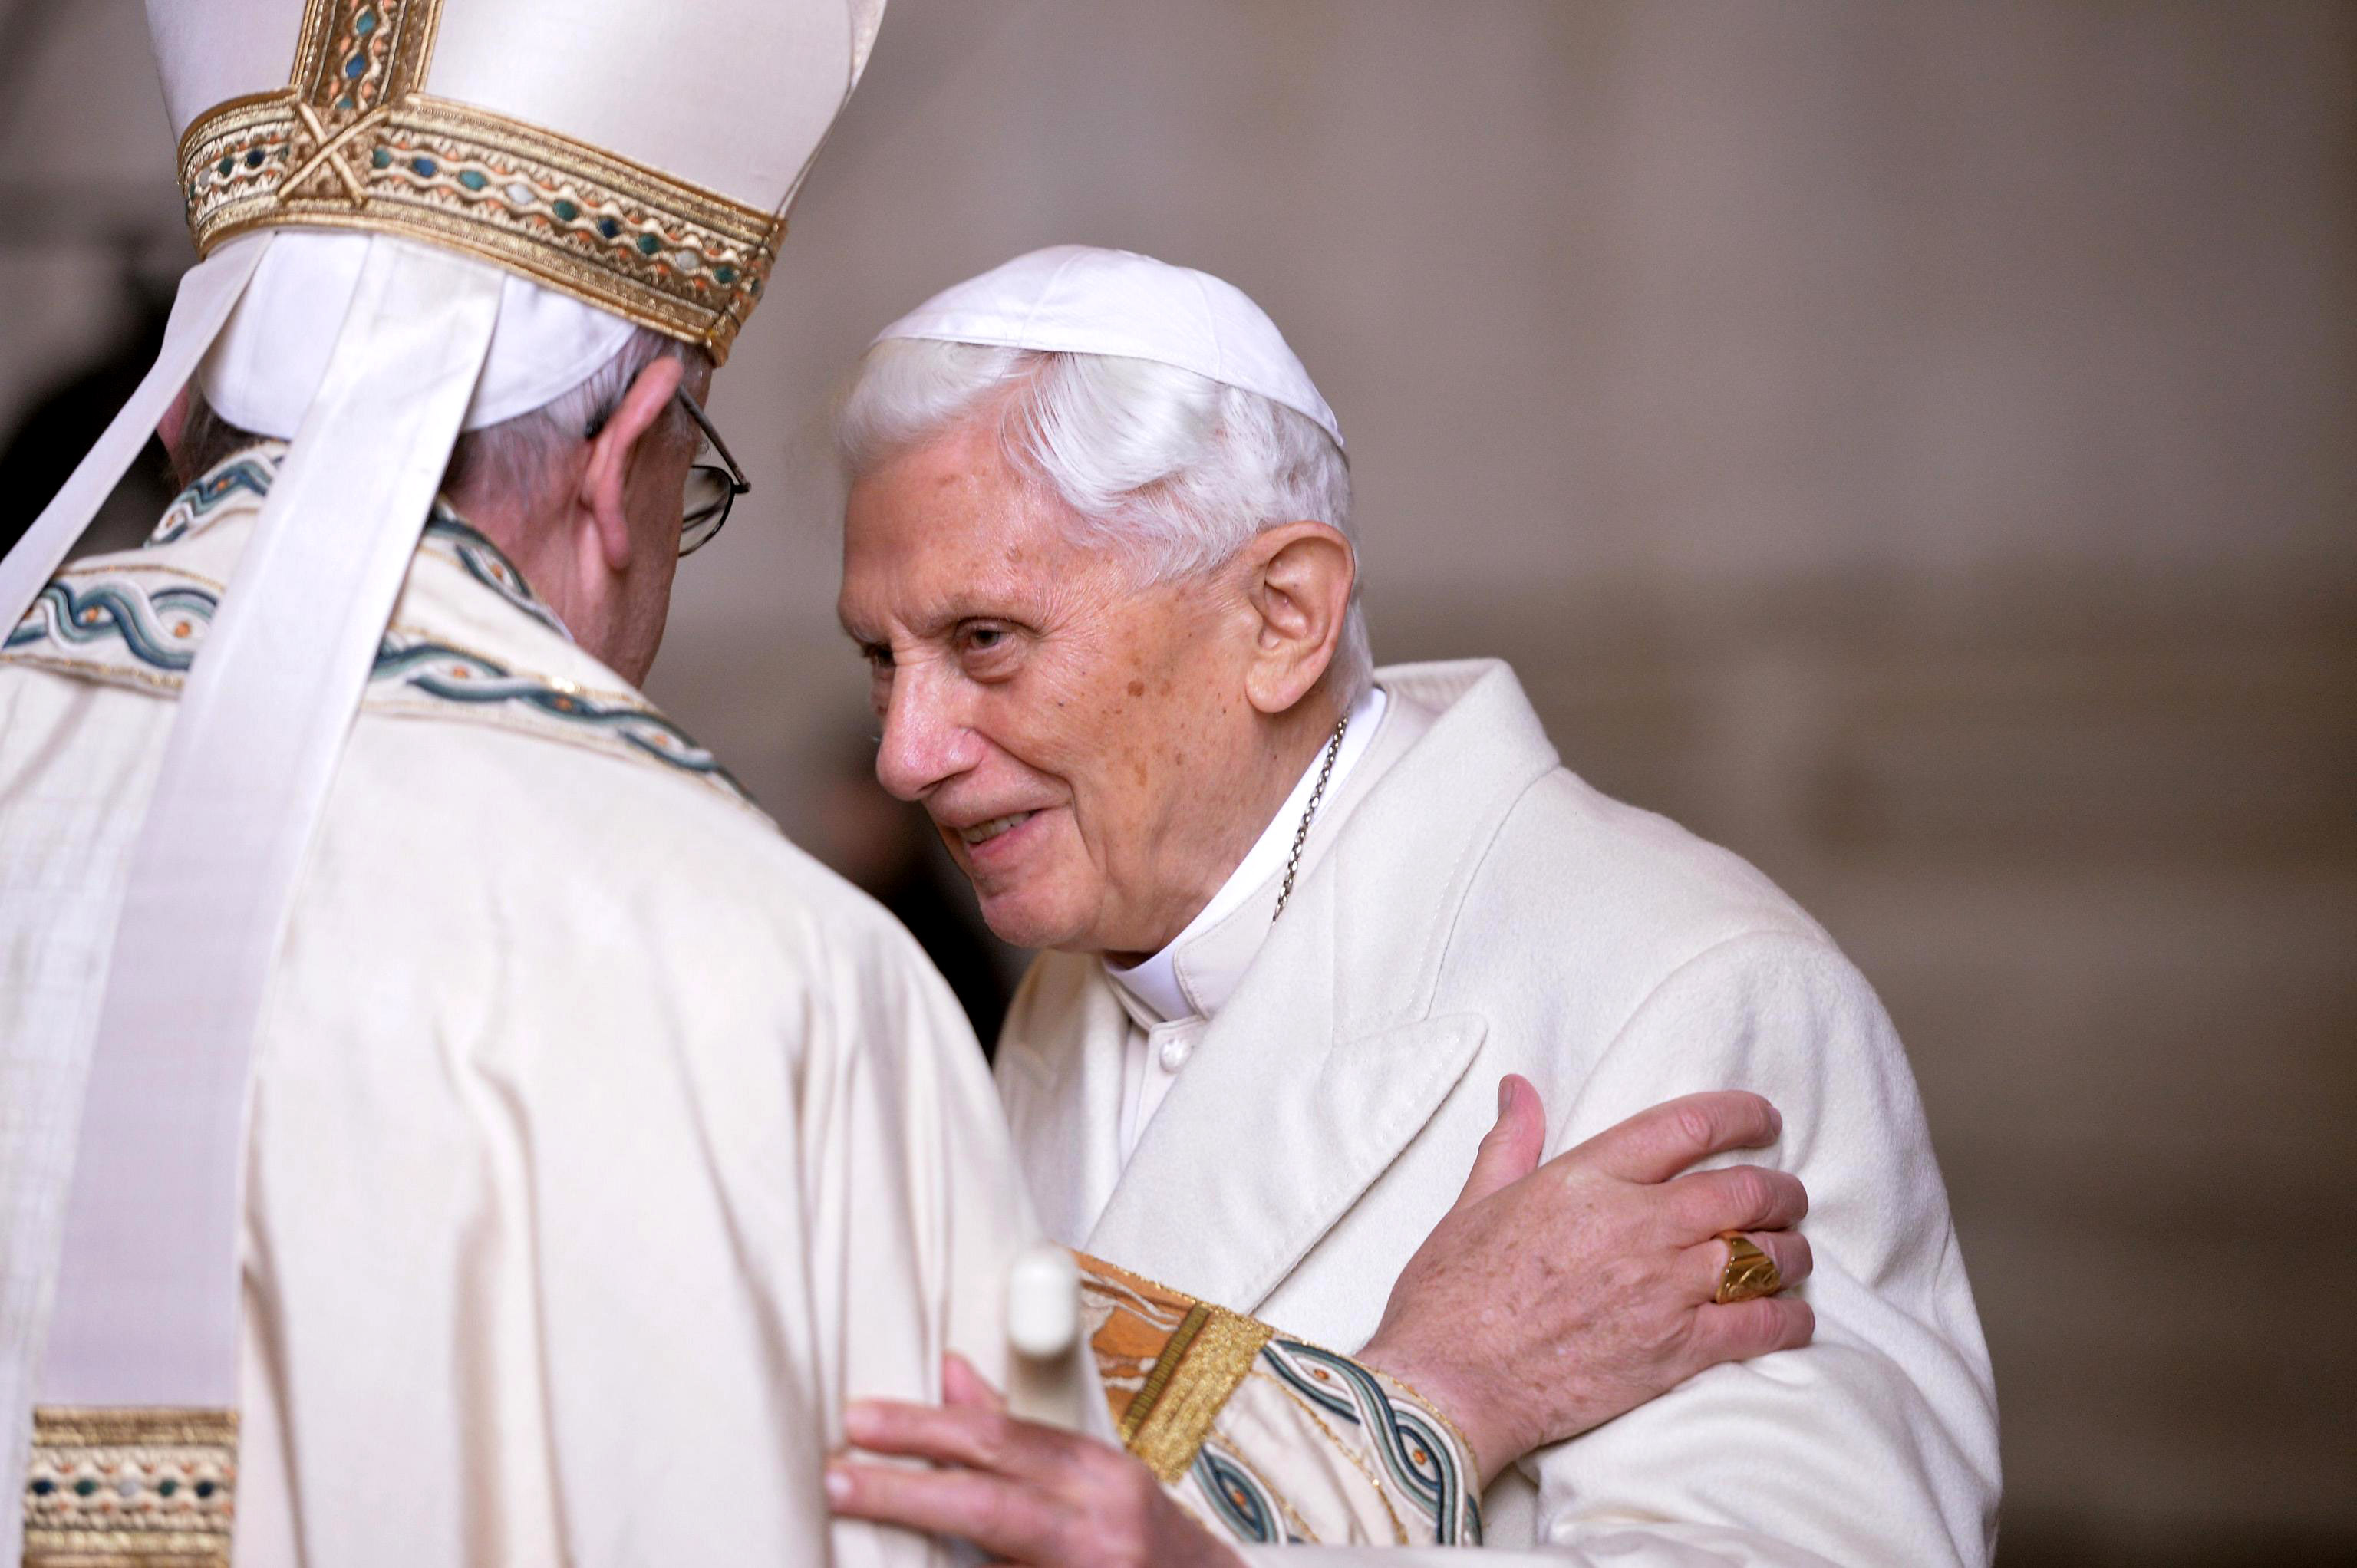 Pope Francis greets retired Pope Benedict XVI in a 2015 photo. (CNS photo/Maurizio Brambatti, EPA)